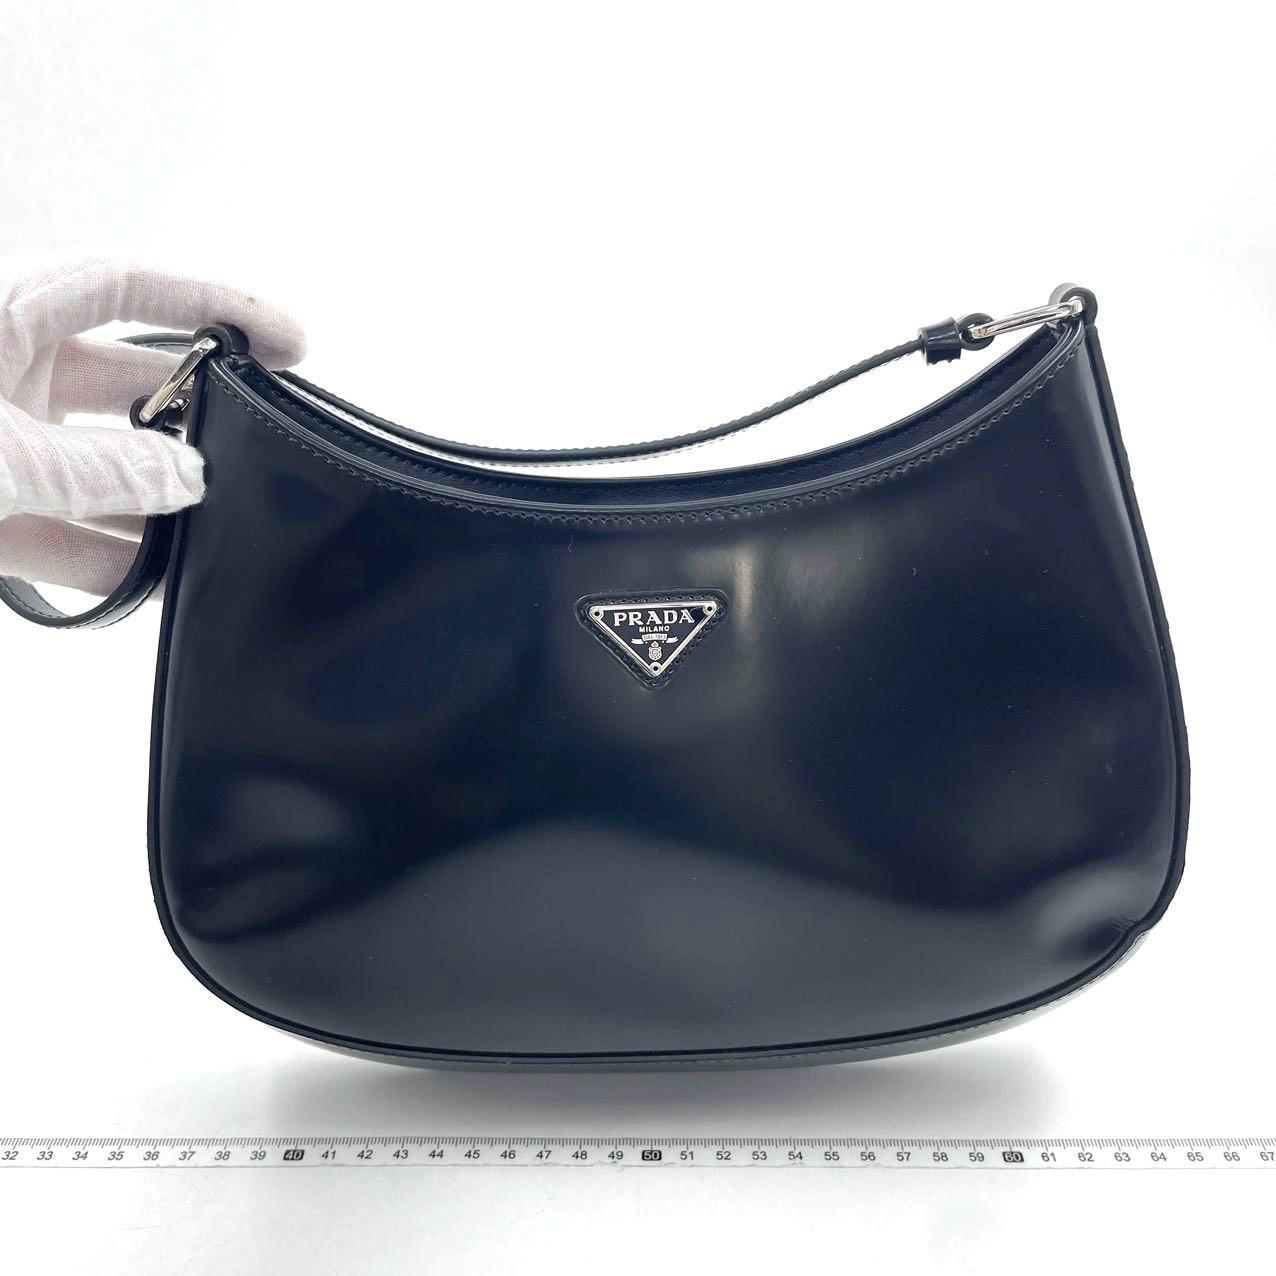 Prada Cleo Black leather shoulder bag 1